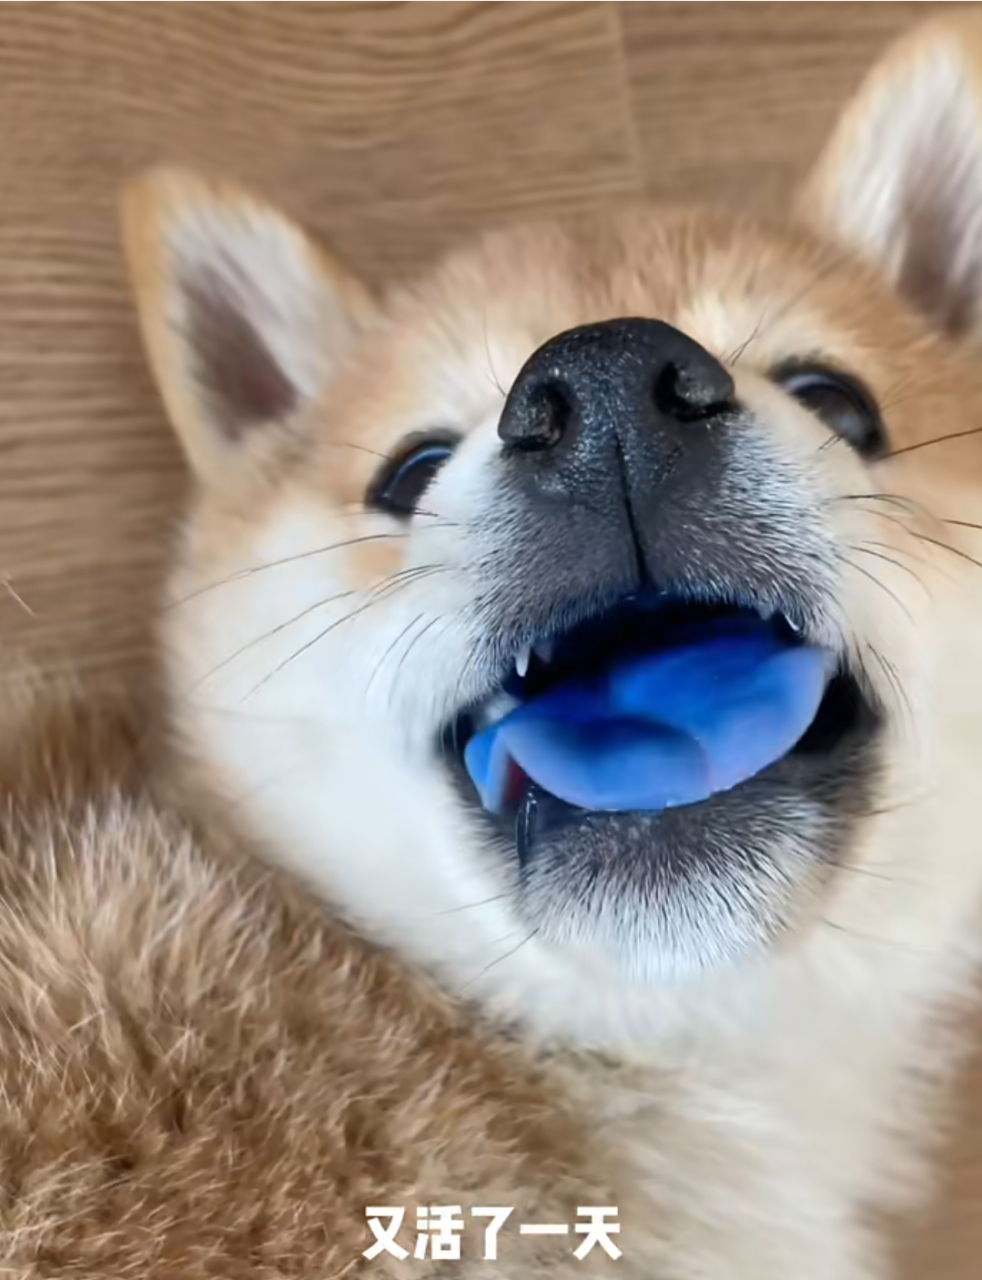 网友:这是特有的蓝舌柴犬,超名贵的!